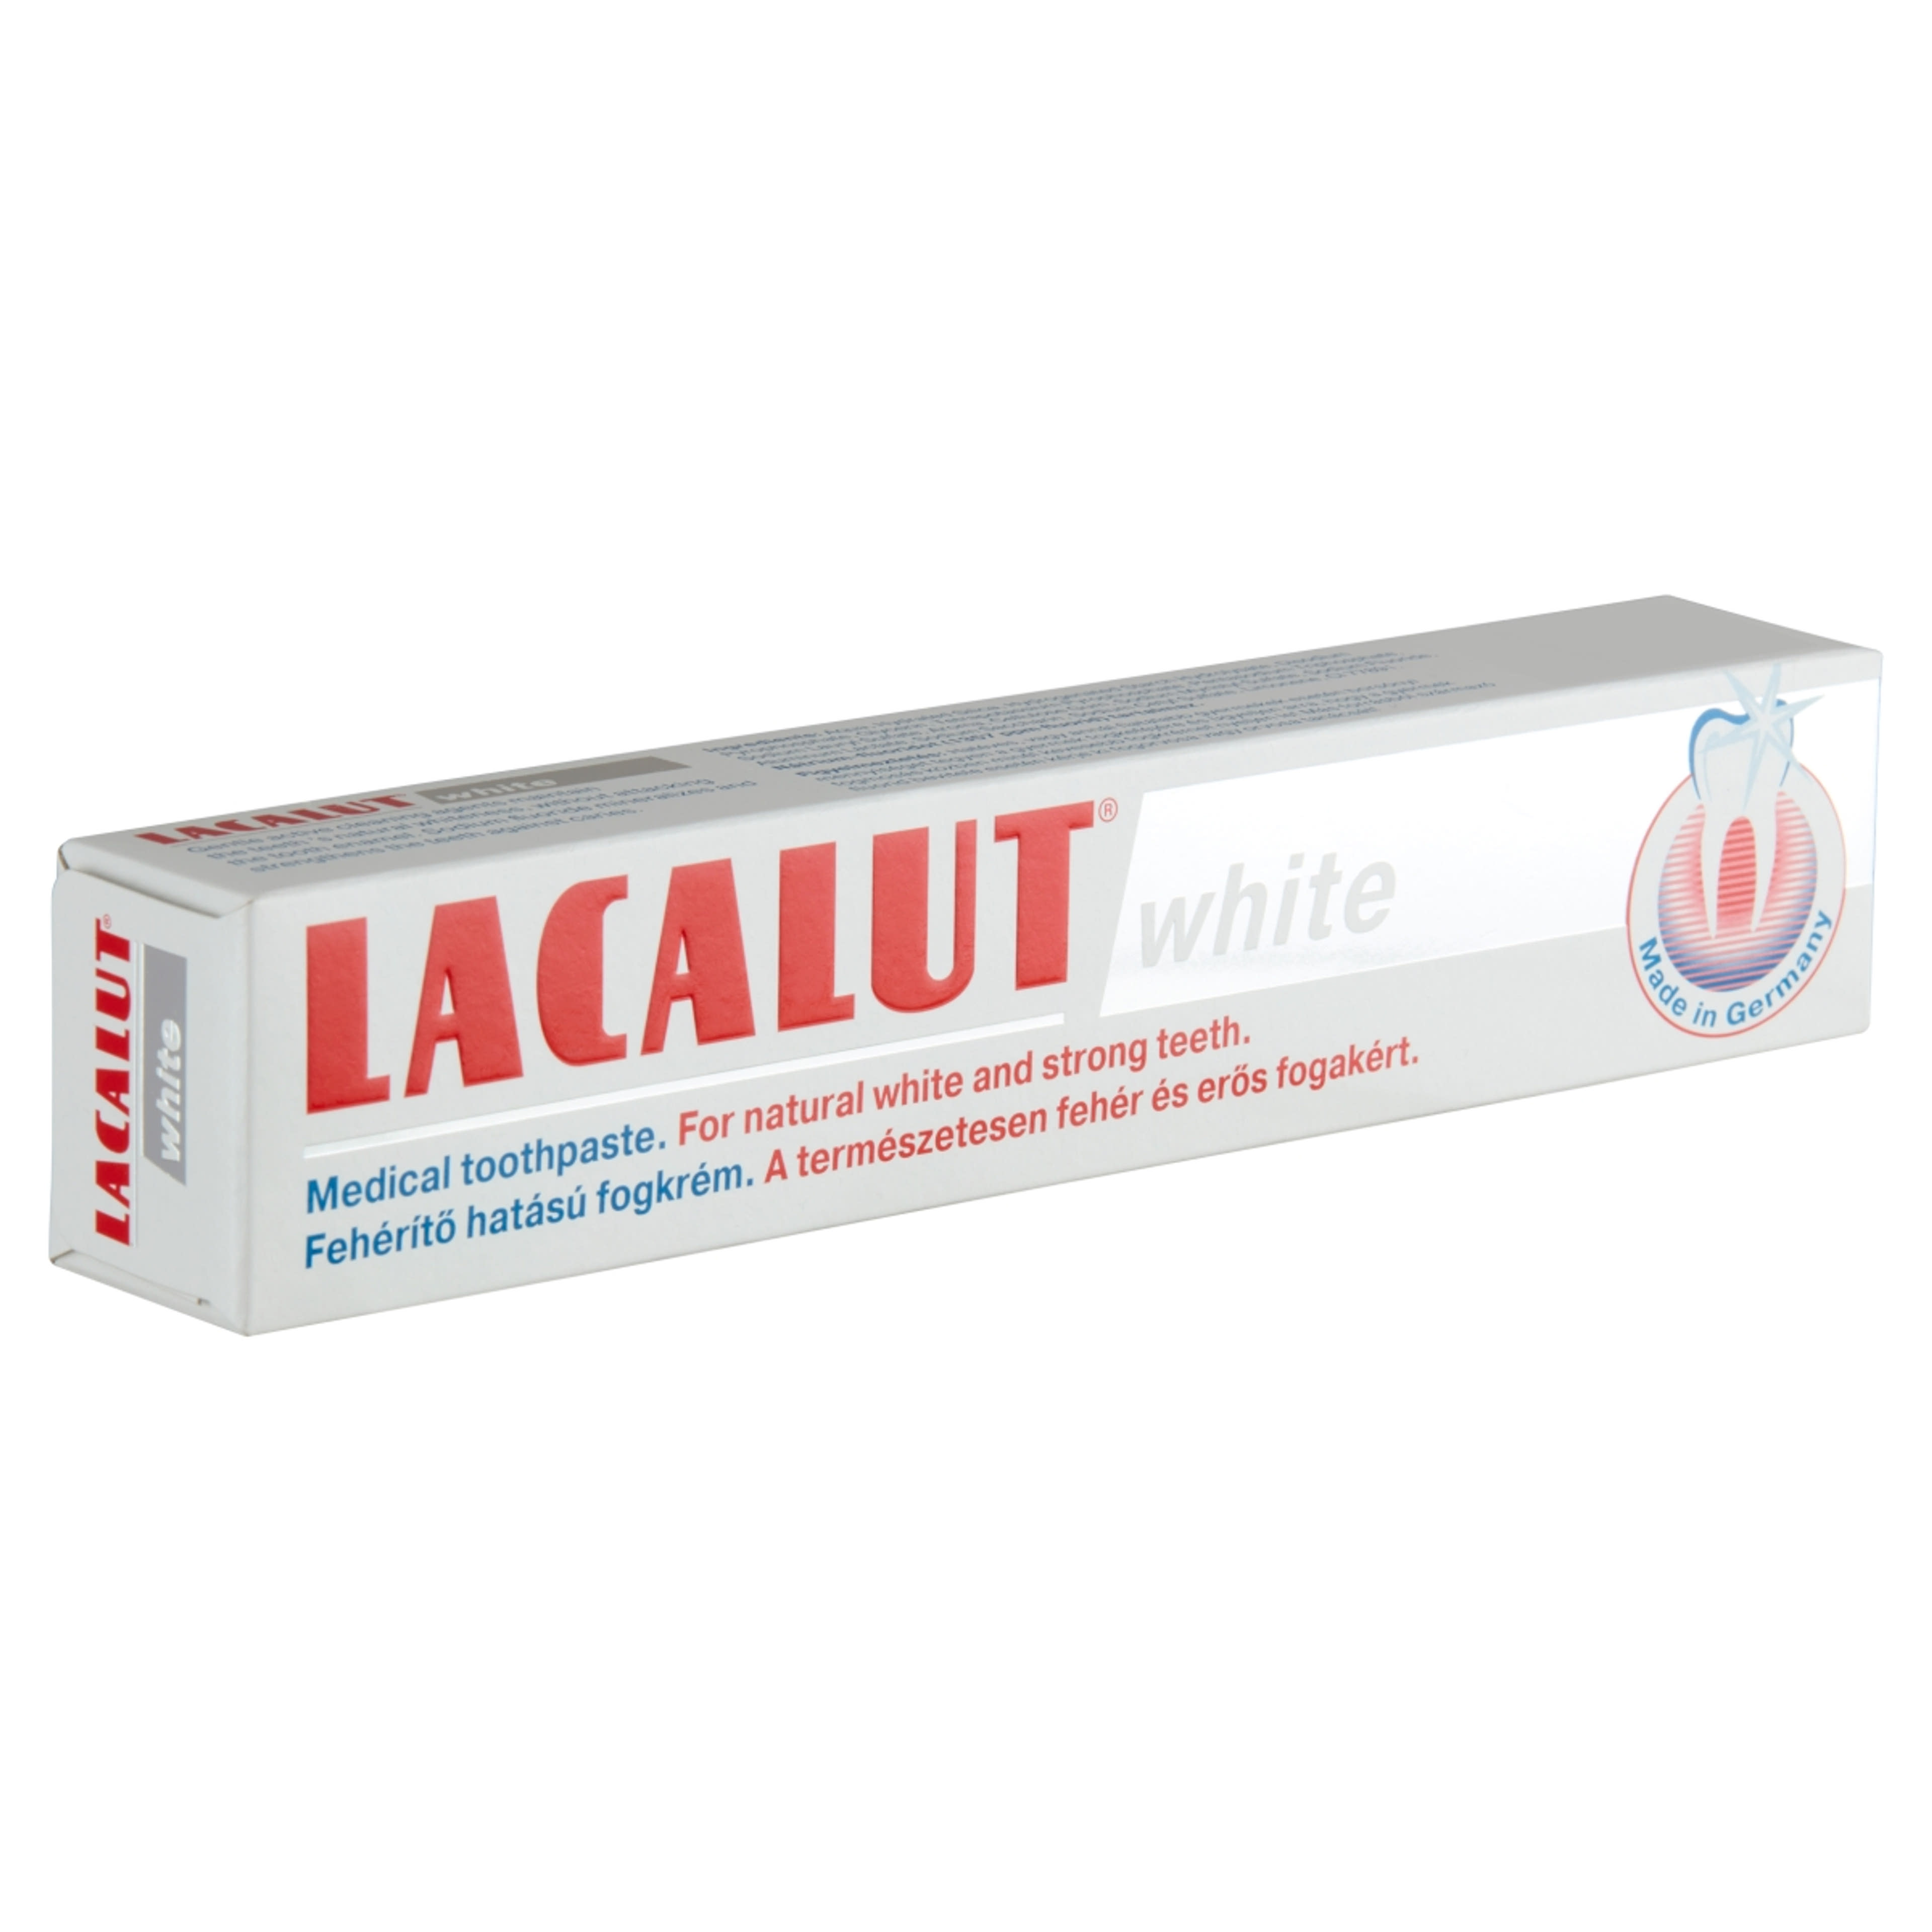 Lacalut White Fehéríto Hatású fogkrém - 75 ml-4